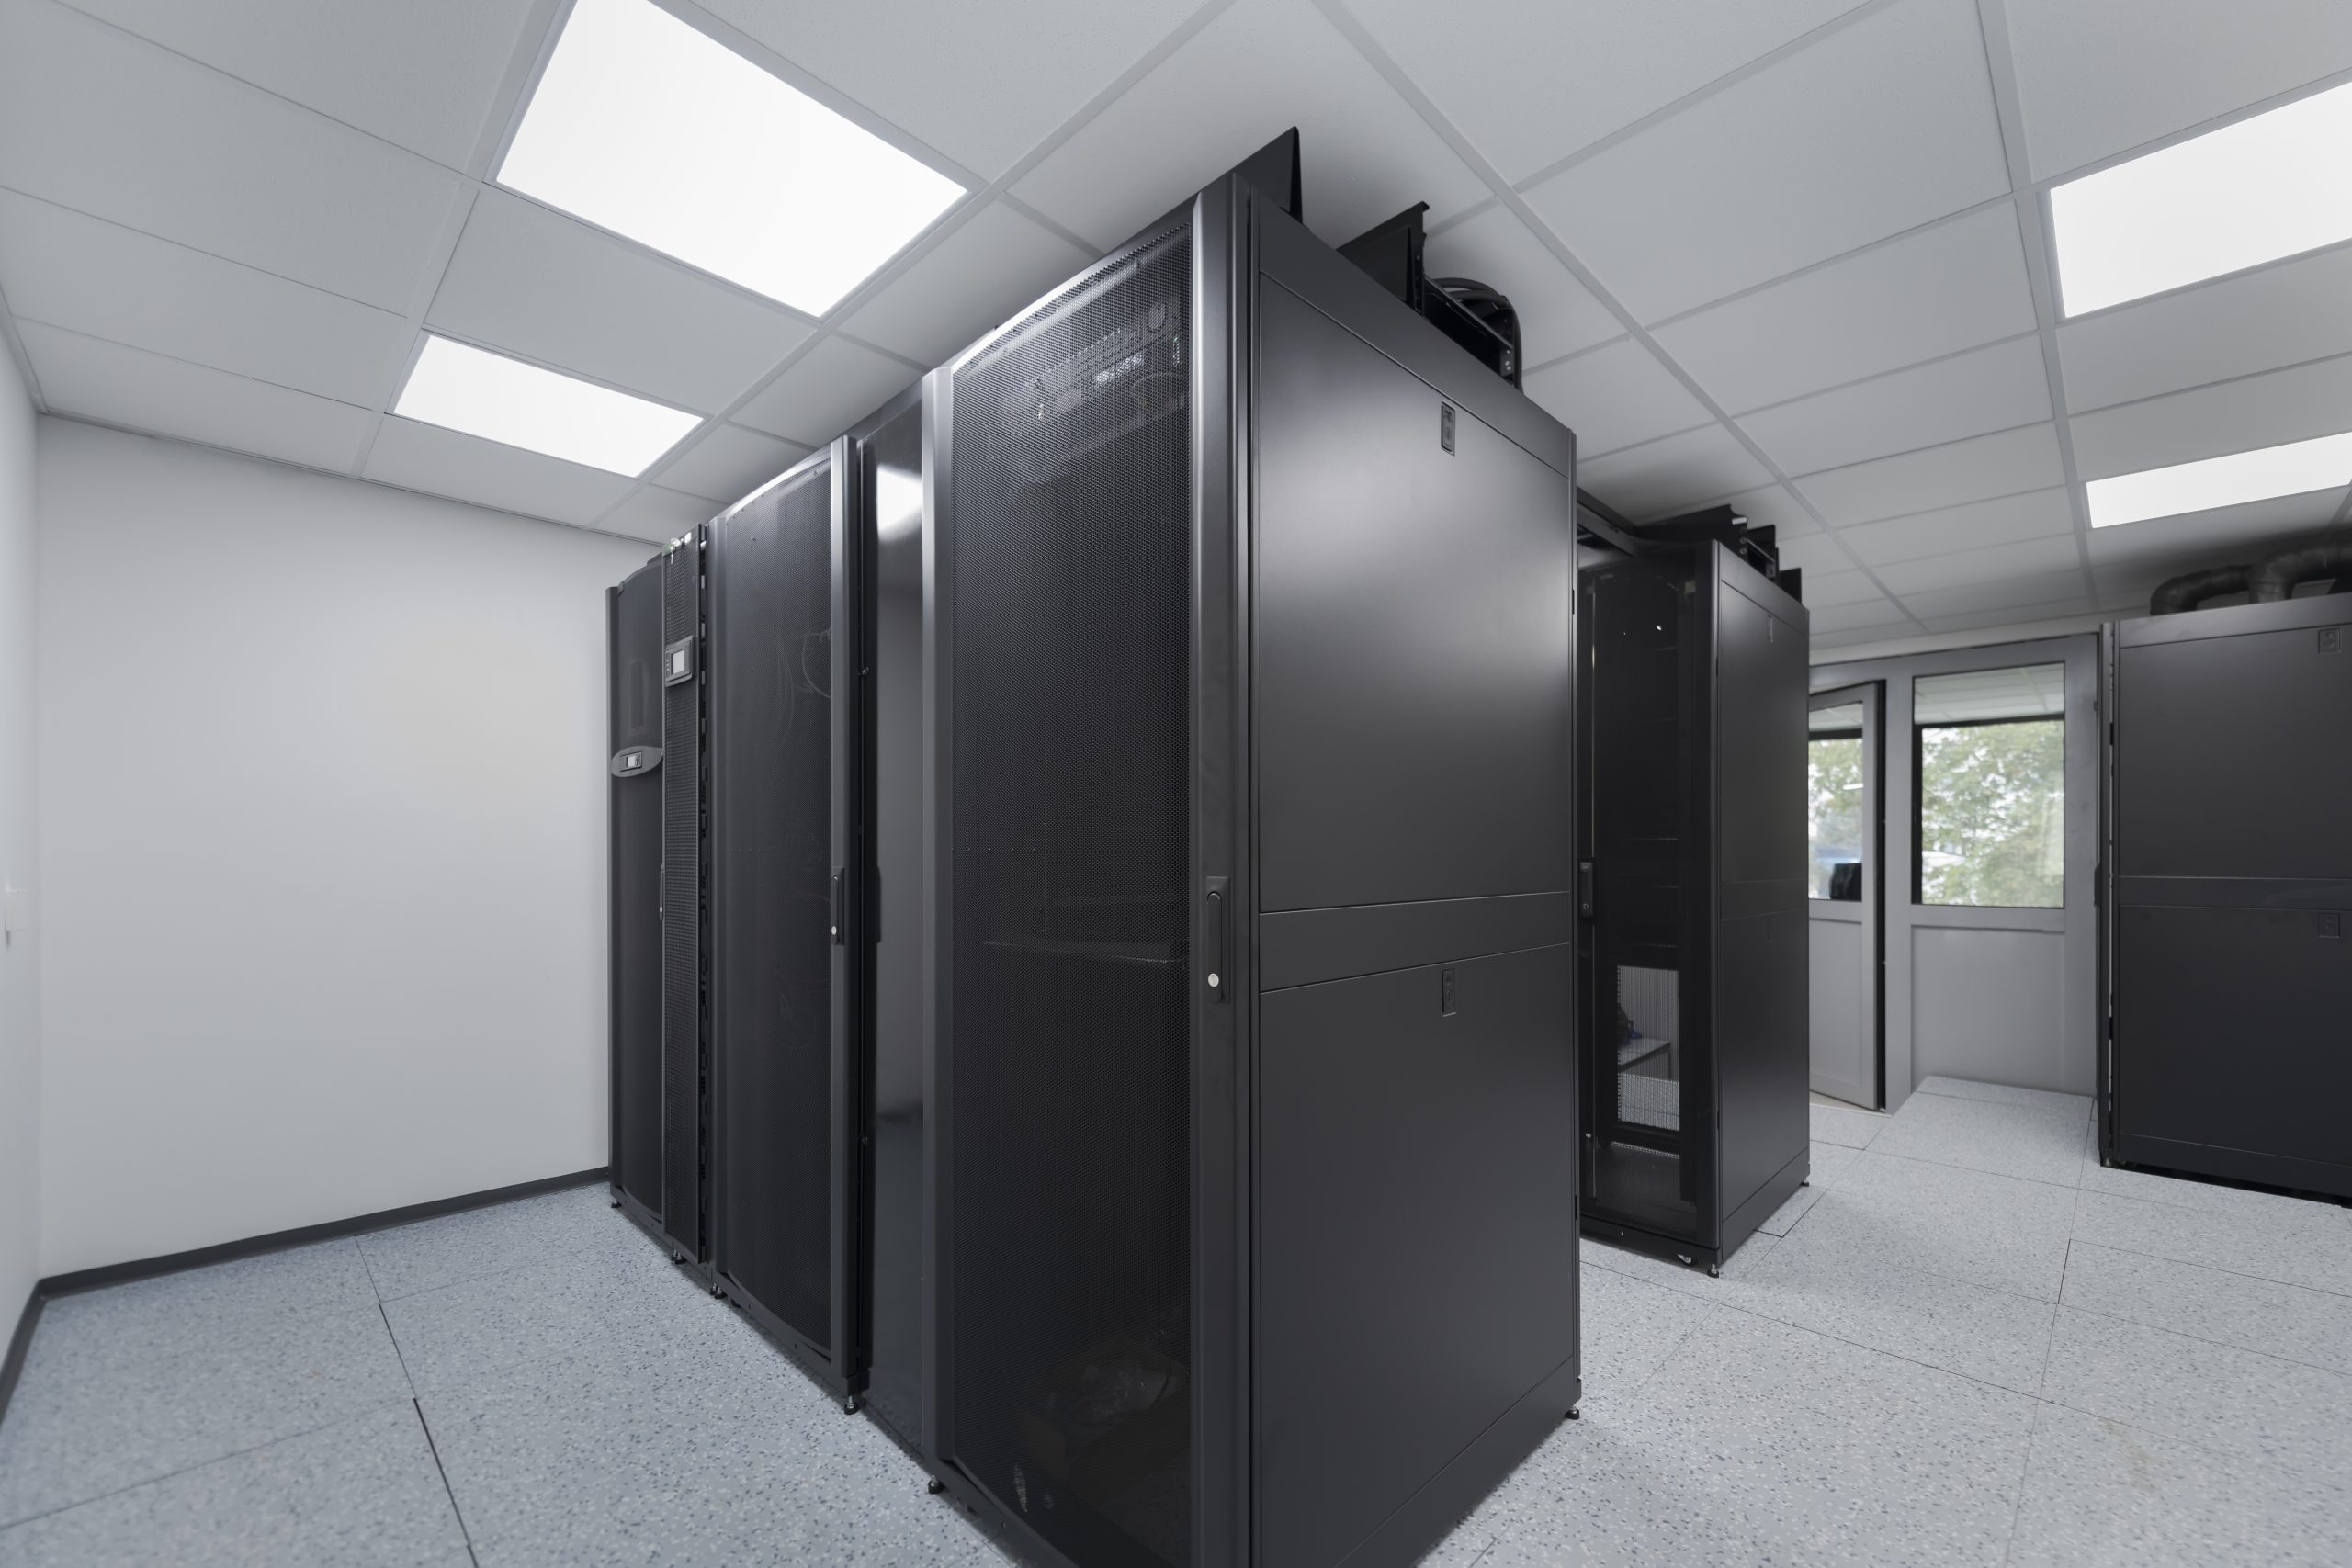 Centre de données avec plusieurs rangées de racks de serveurs entièrement opérationnels. Télécommunications modernes, Cloud Computing, Intelligence artificielle, base de données, concept technologique de superordinateur.